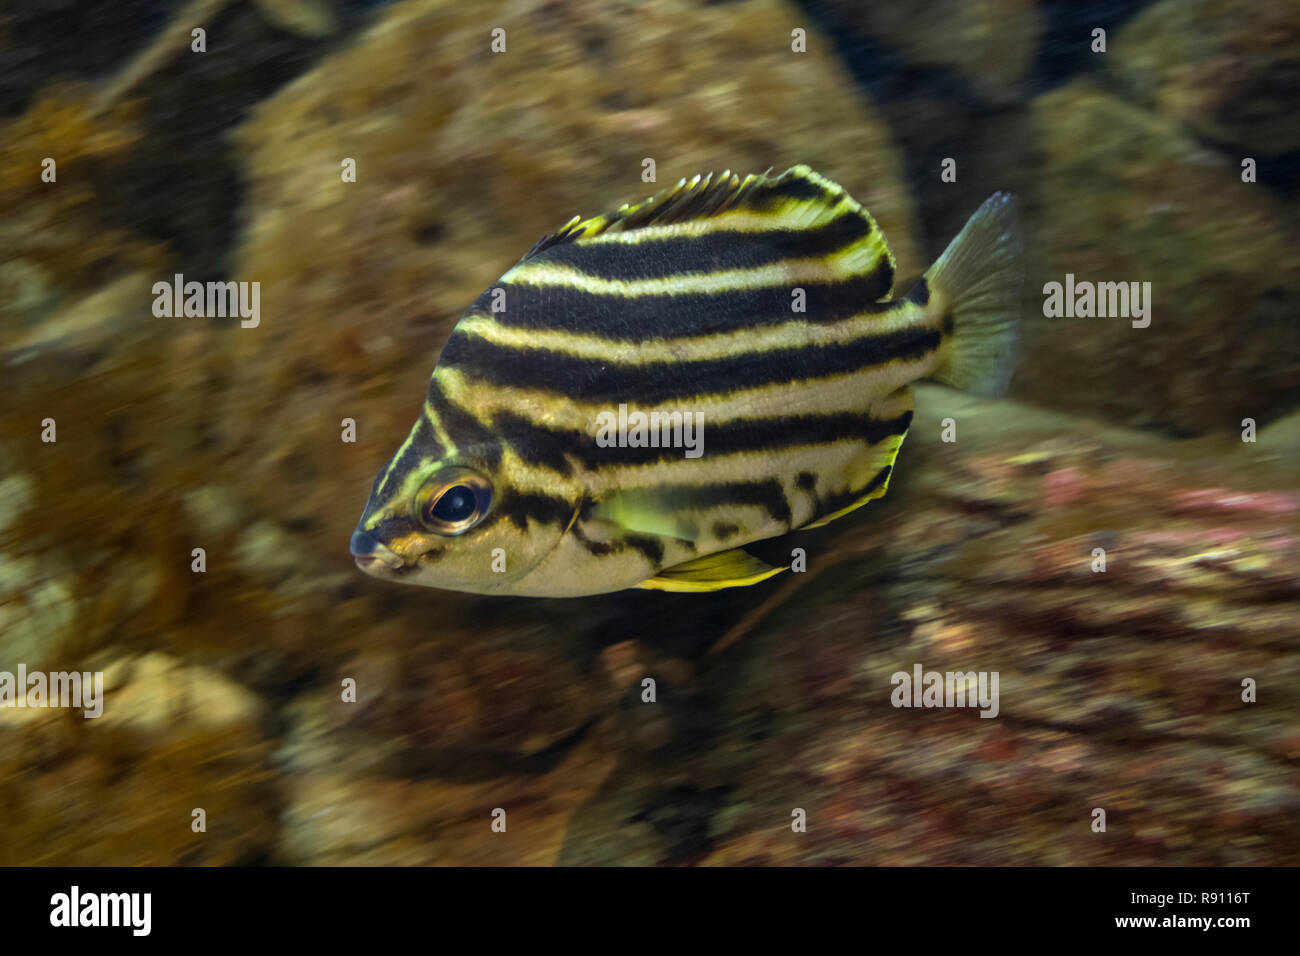 Natation Stripey tropical dans un aquarium underwater Banque D'Images